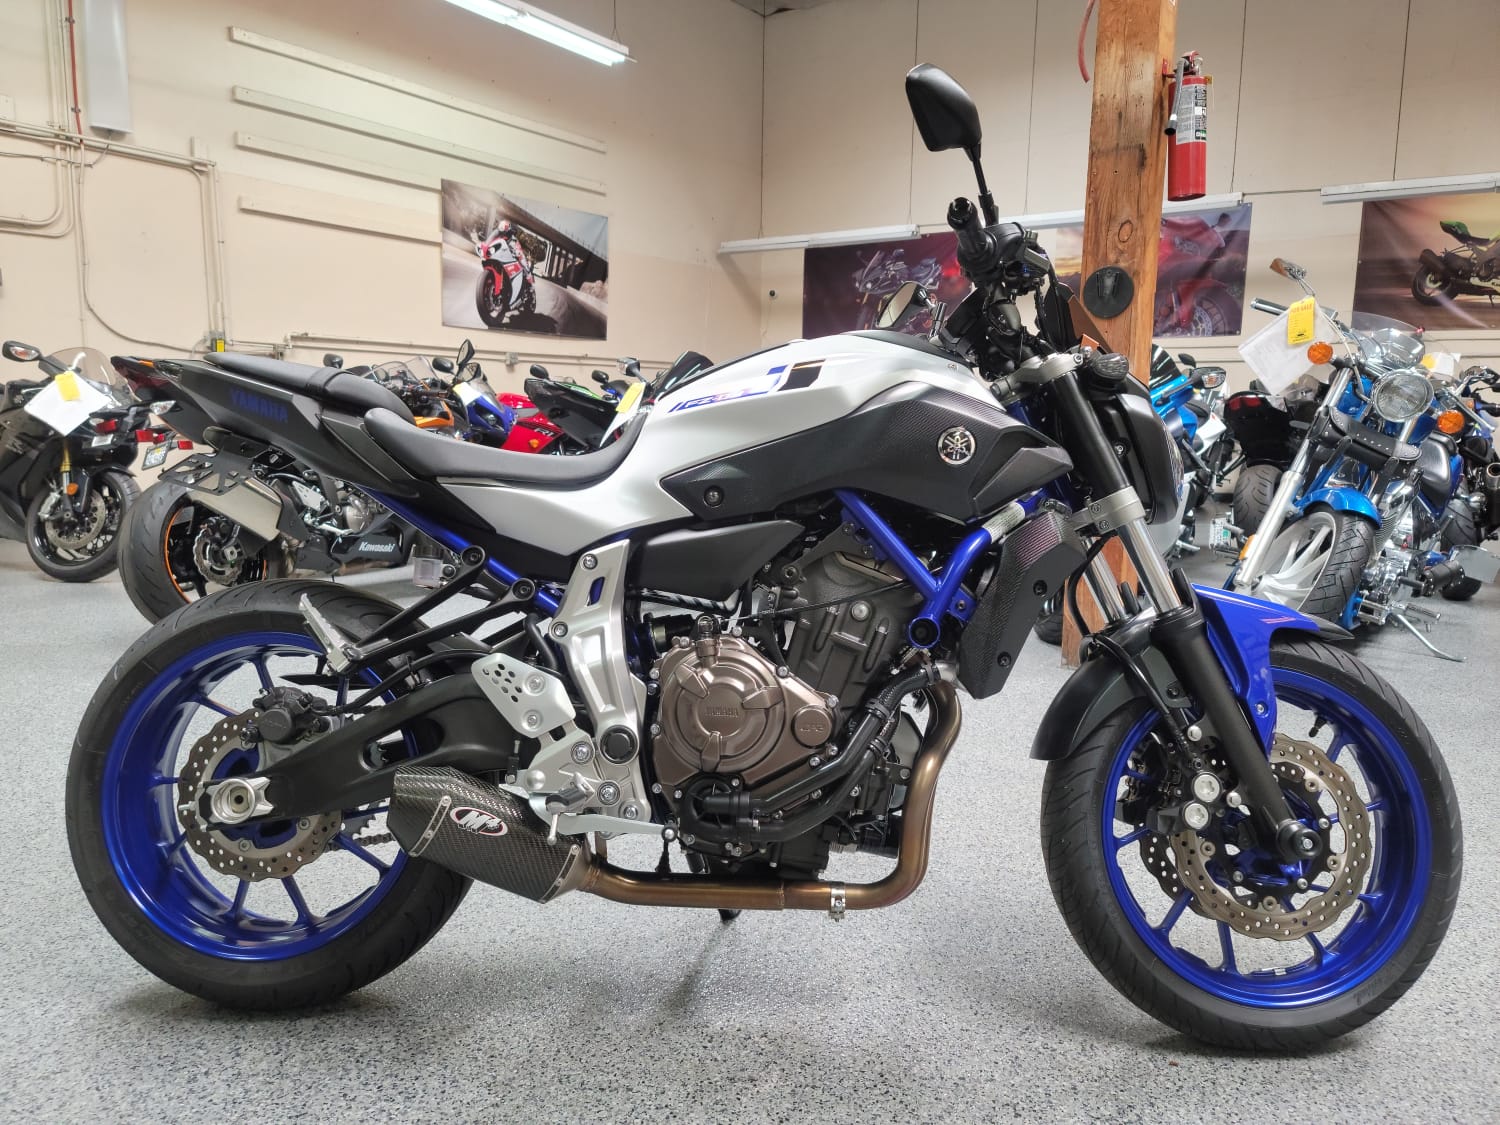 2016 Yamaha FZ-07 for sale near San Diego, California 